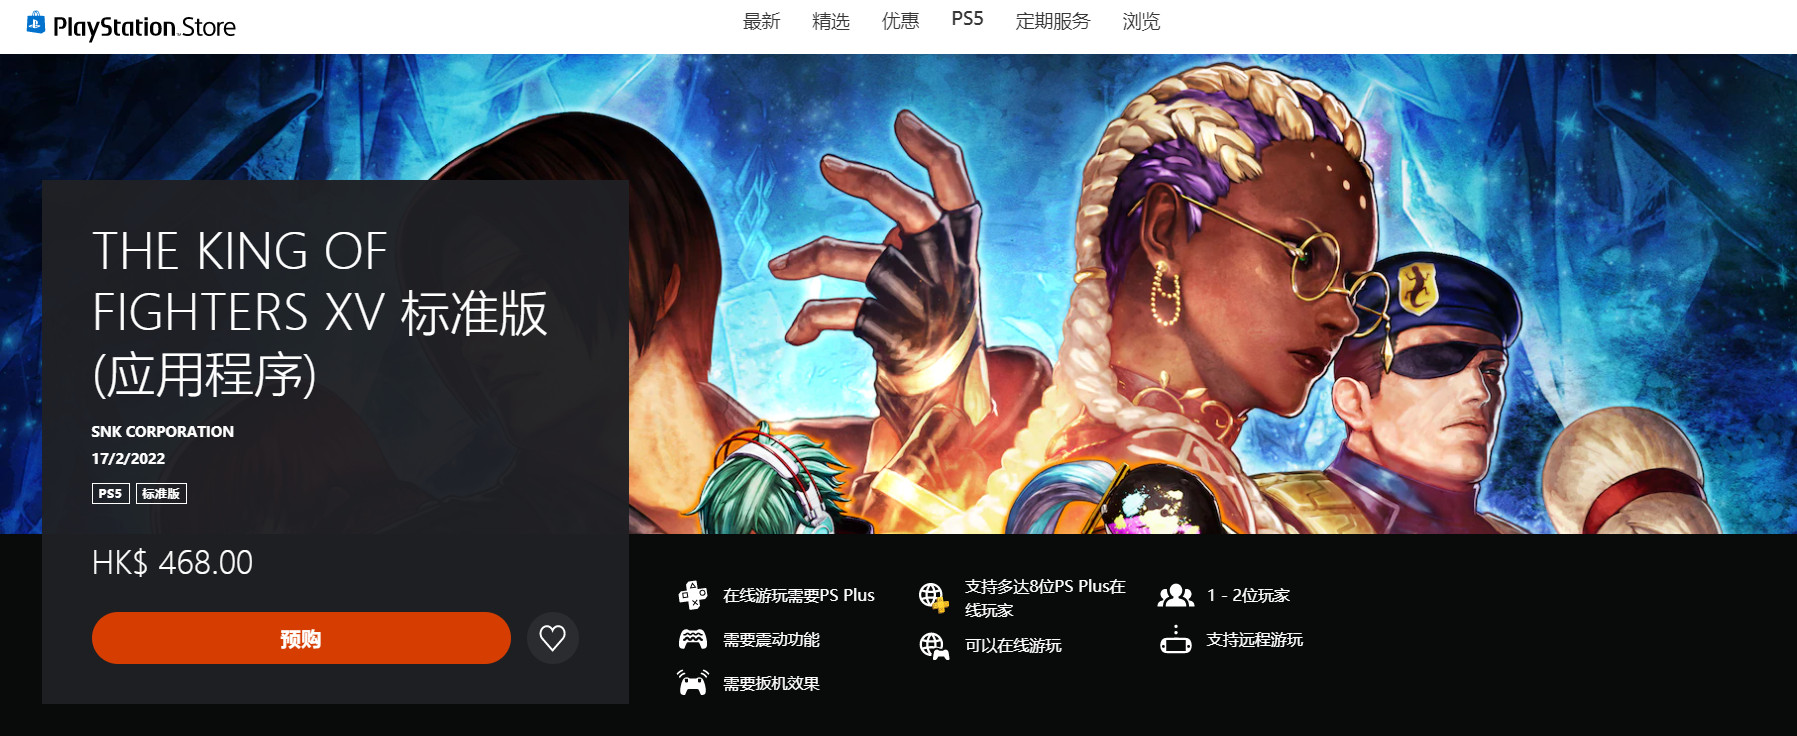 《拳皇15》PS5标准版468港币 中文官网上线